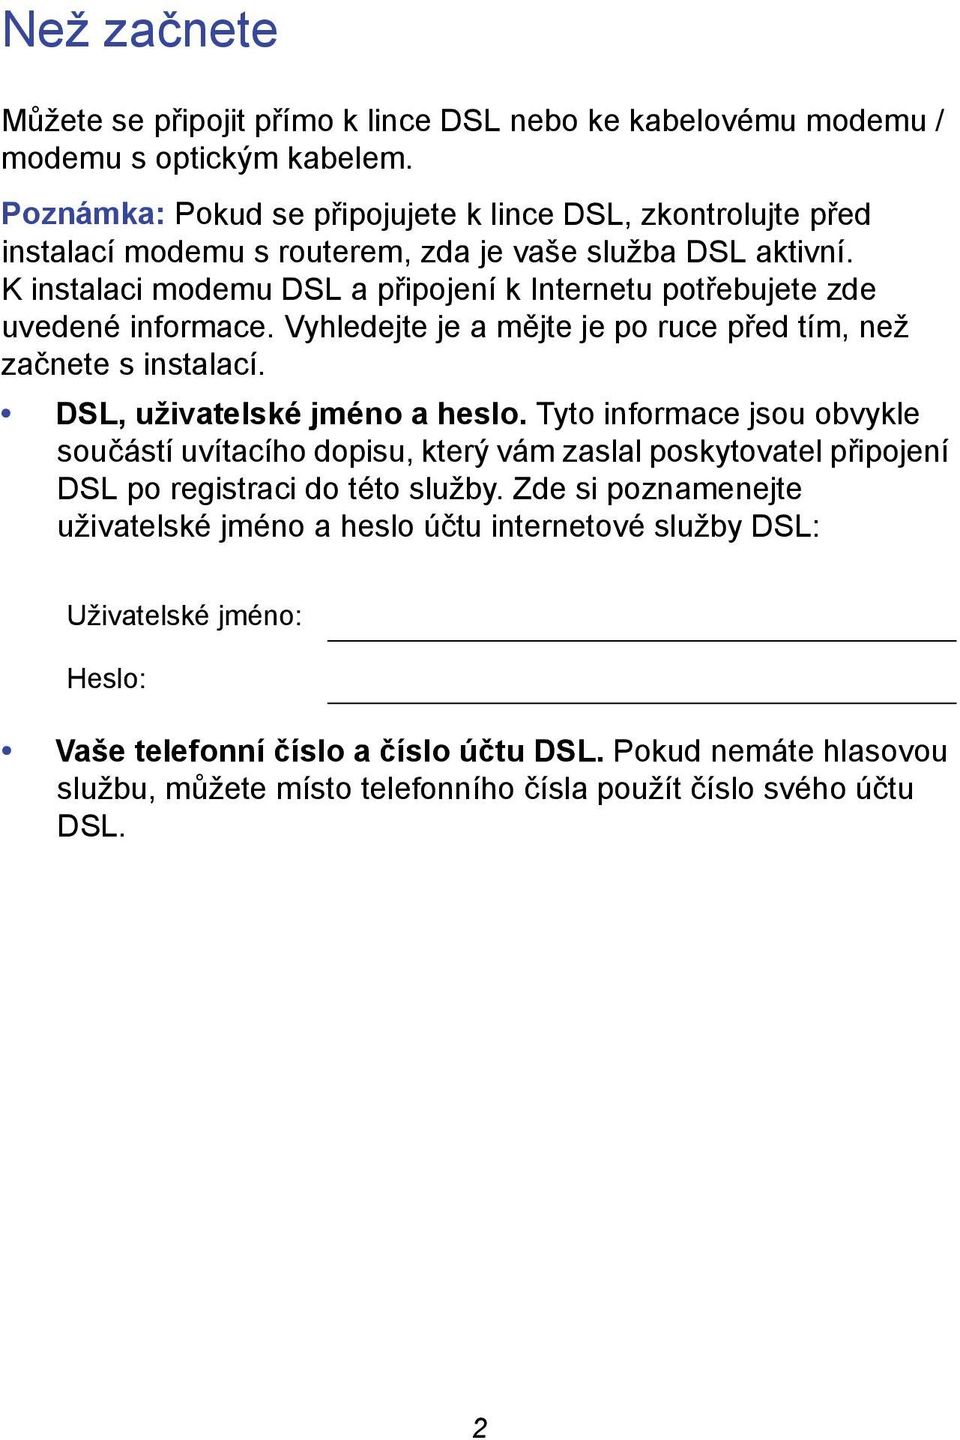 K instalaci modemu DSL a připojení k Internetu potřebujete zde uvedené informace. Vyhledejte je a mějte je po ruce před tím, než začnete s instalací. DSL, uživatelské jméno a heslo.